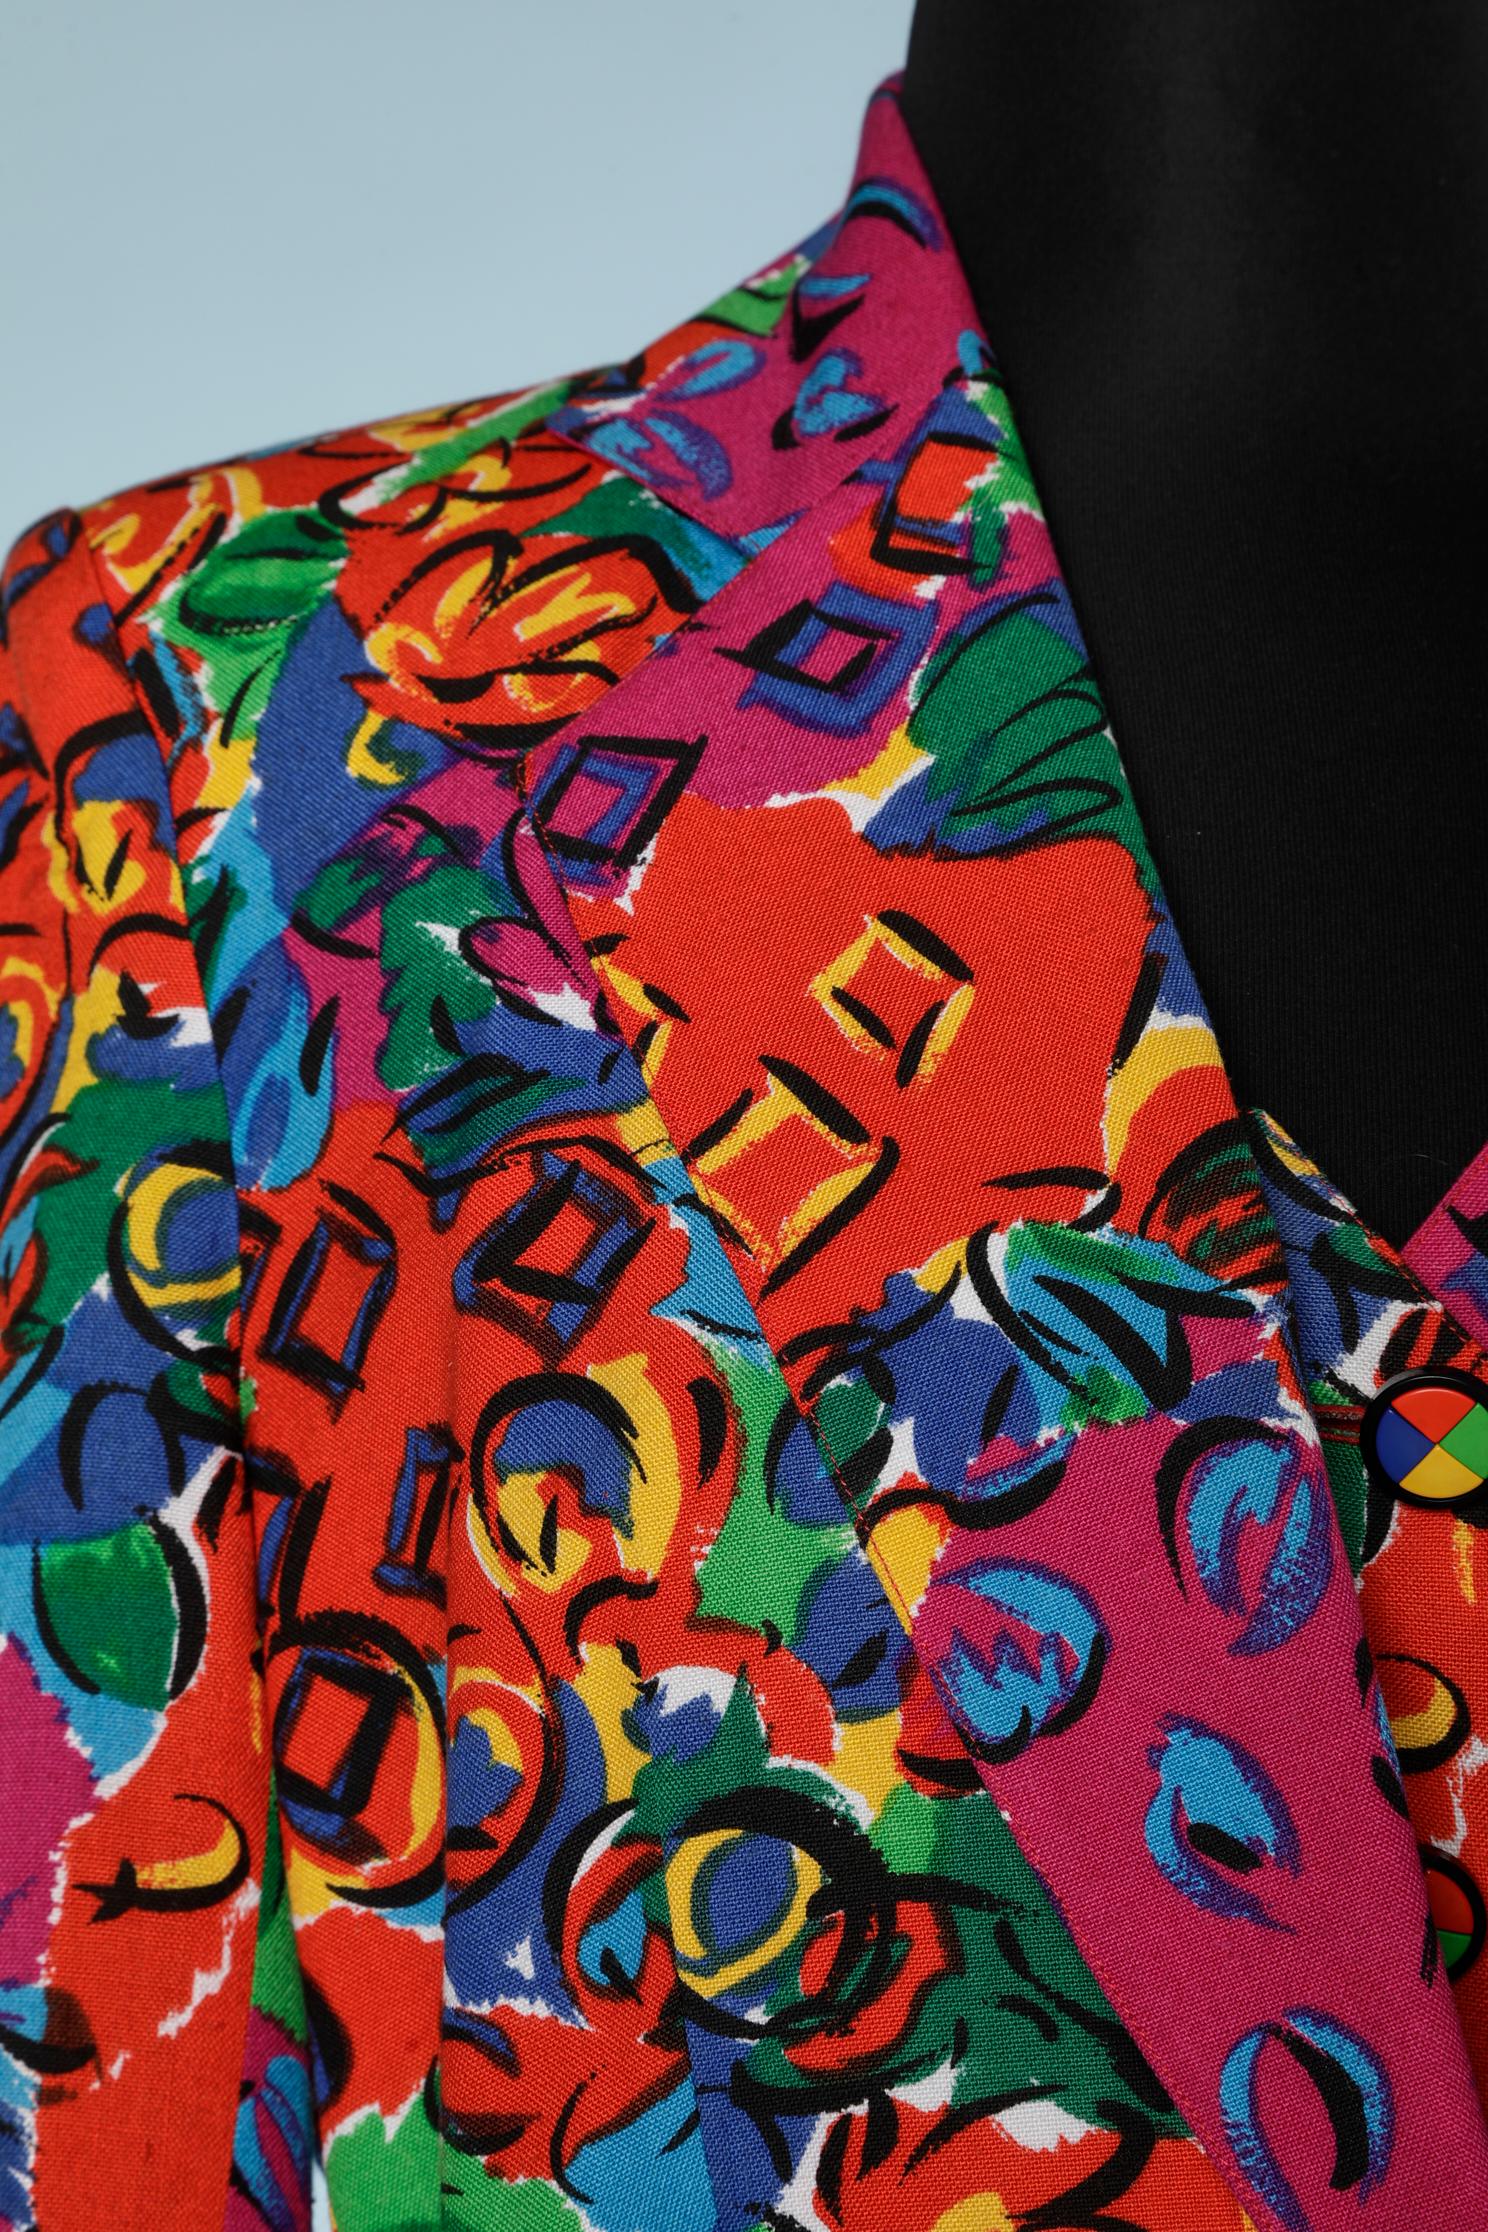 Ensemble en coton imprimé multicolore (veste et robe)
TAILLE 40 (M)